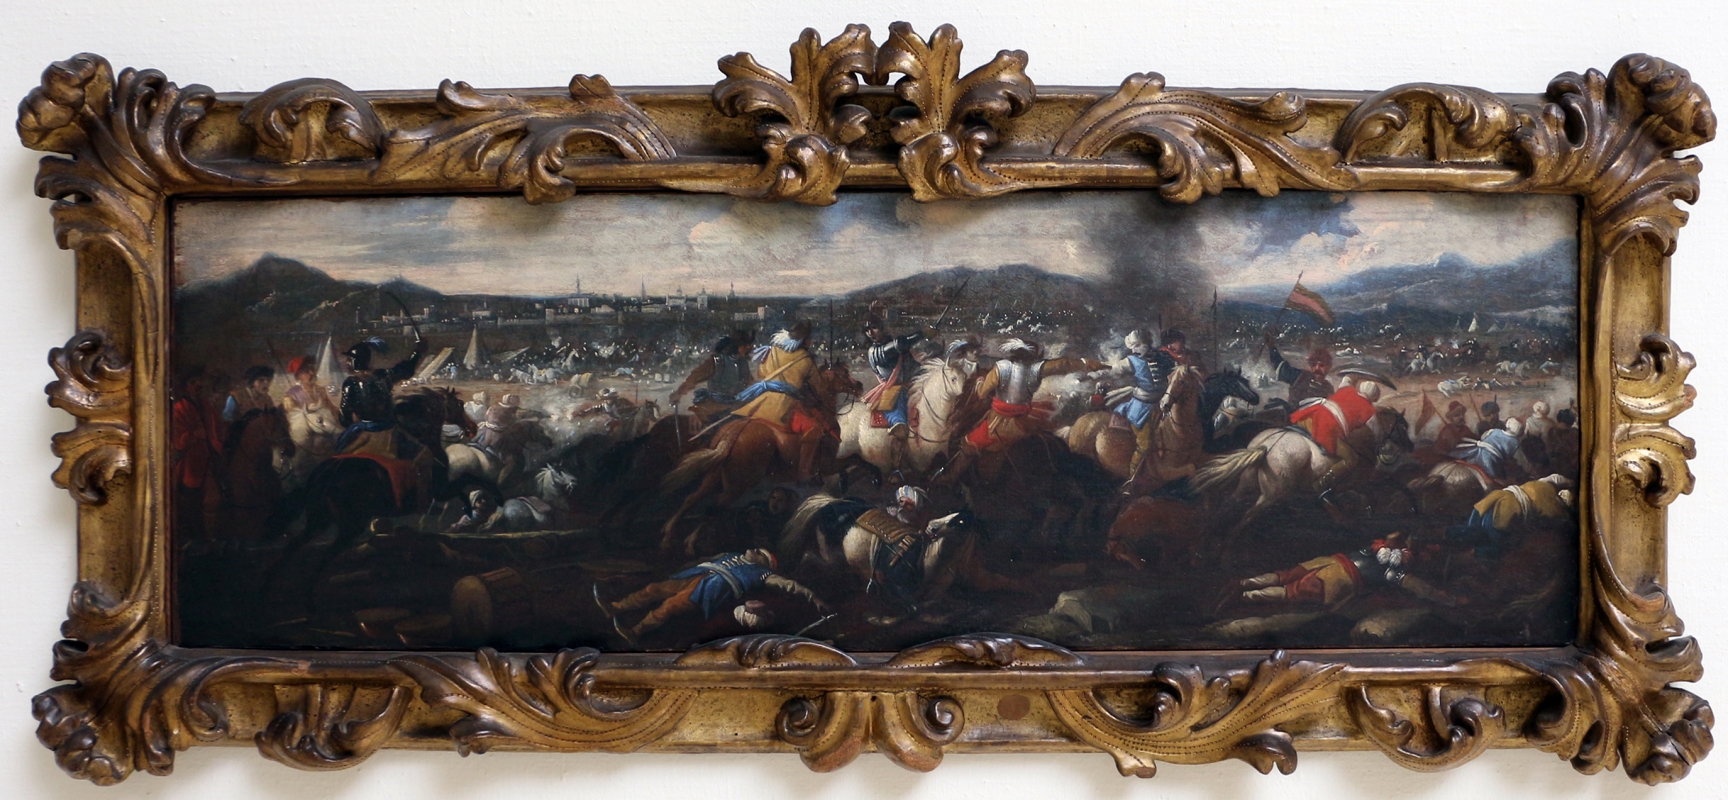 Ignoto, battaglia tra cavalieri turchi e cristiani, 1650-1700 ca. 03 - Sailko